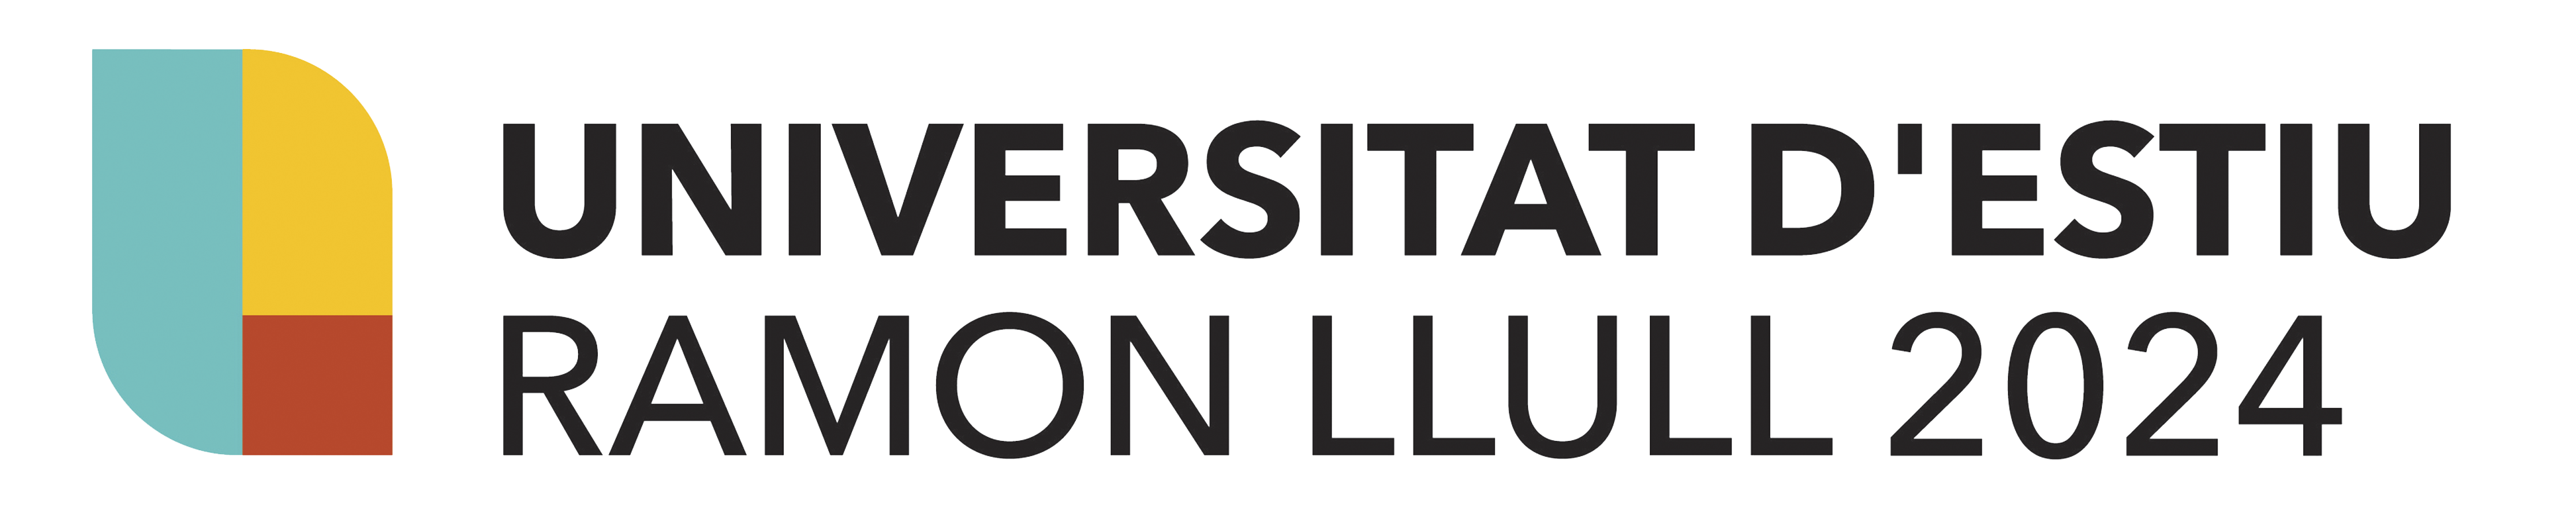 UERL-logo-23